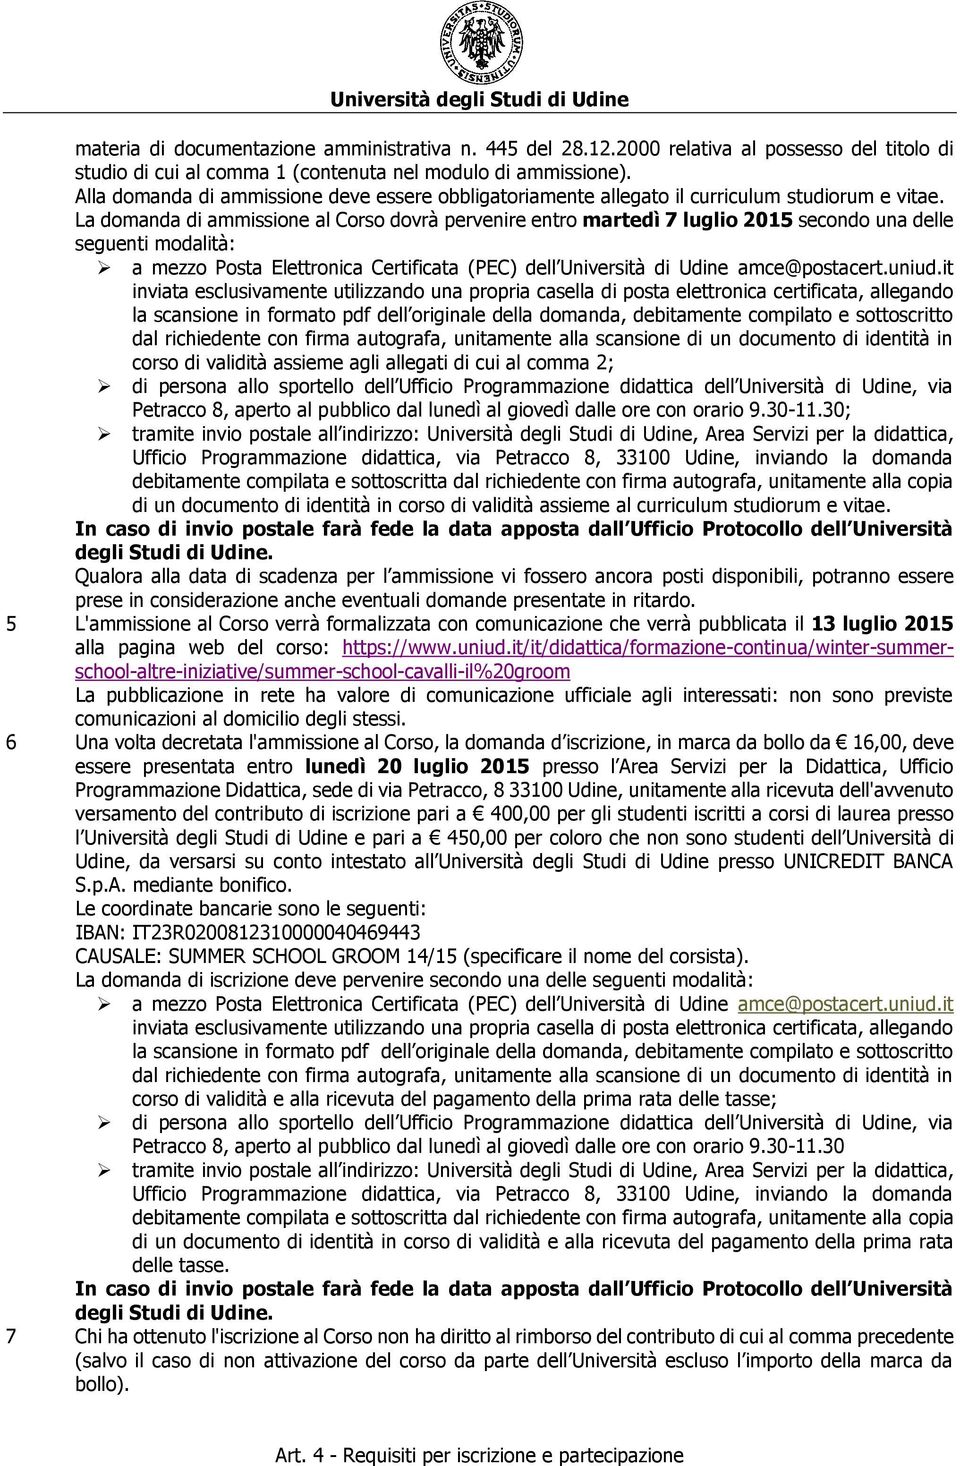 La domanda di ammissione al Corso dovrà pervenire entro martedì 7 luglio 2015 secondo una delle seguenti modalità: a mezzo Posta Elettronica Certificata (PEC) dell Università di Udine amce@postacert.